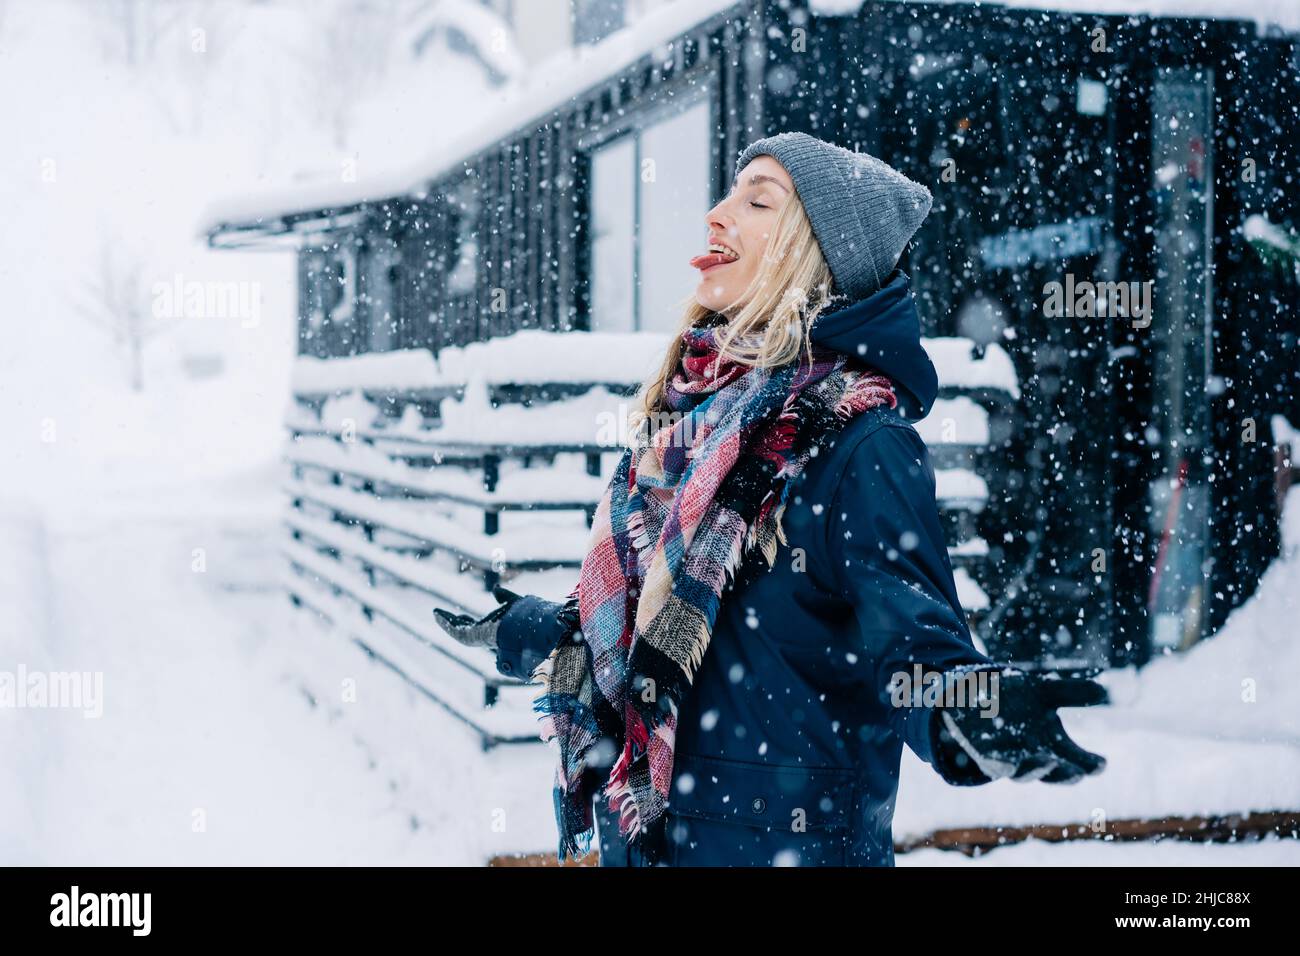 Eine junge Frau streckt ihre Zunge aus, um während eines Schneesturms Schneeflocken zu fangen. Stockfoto